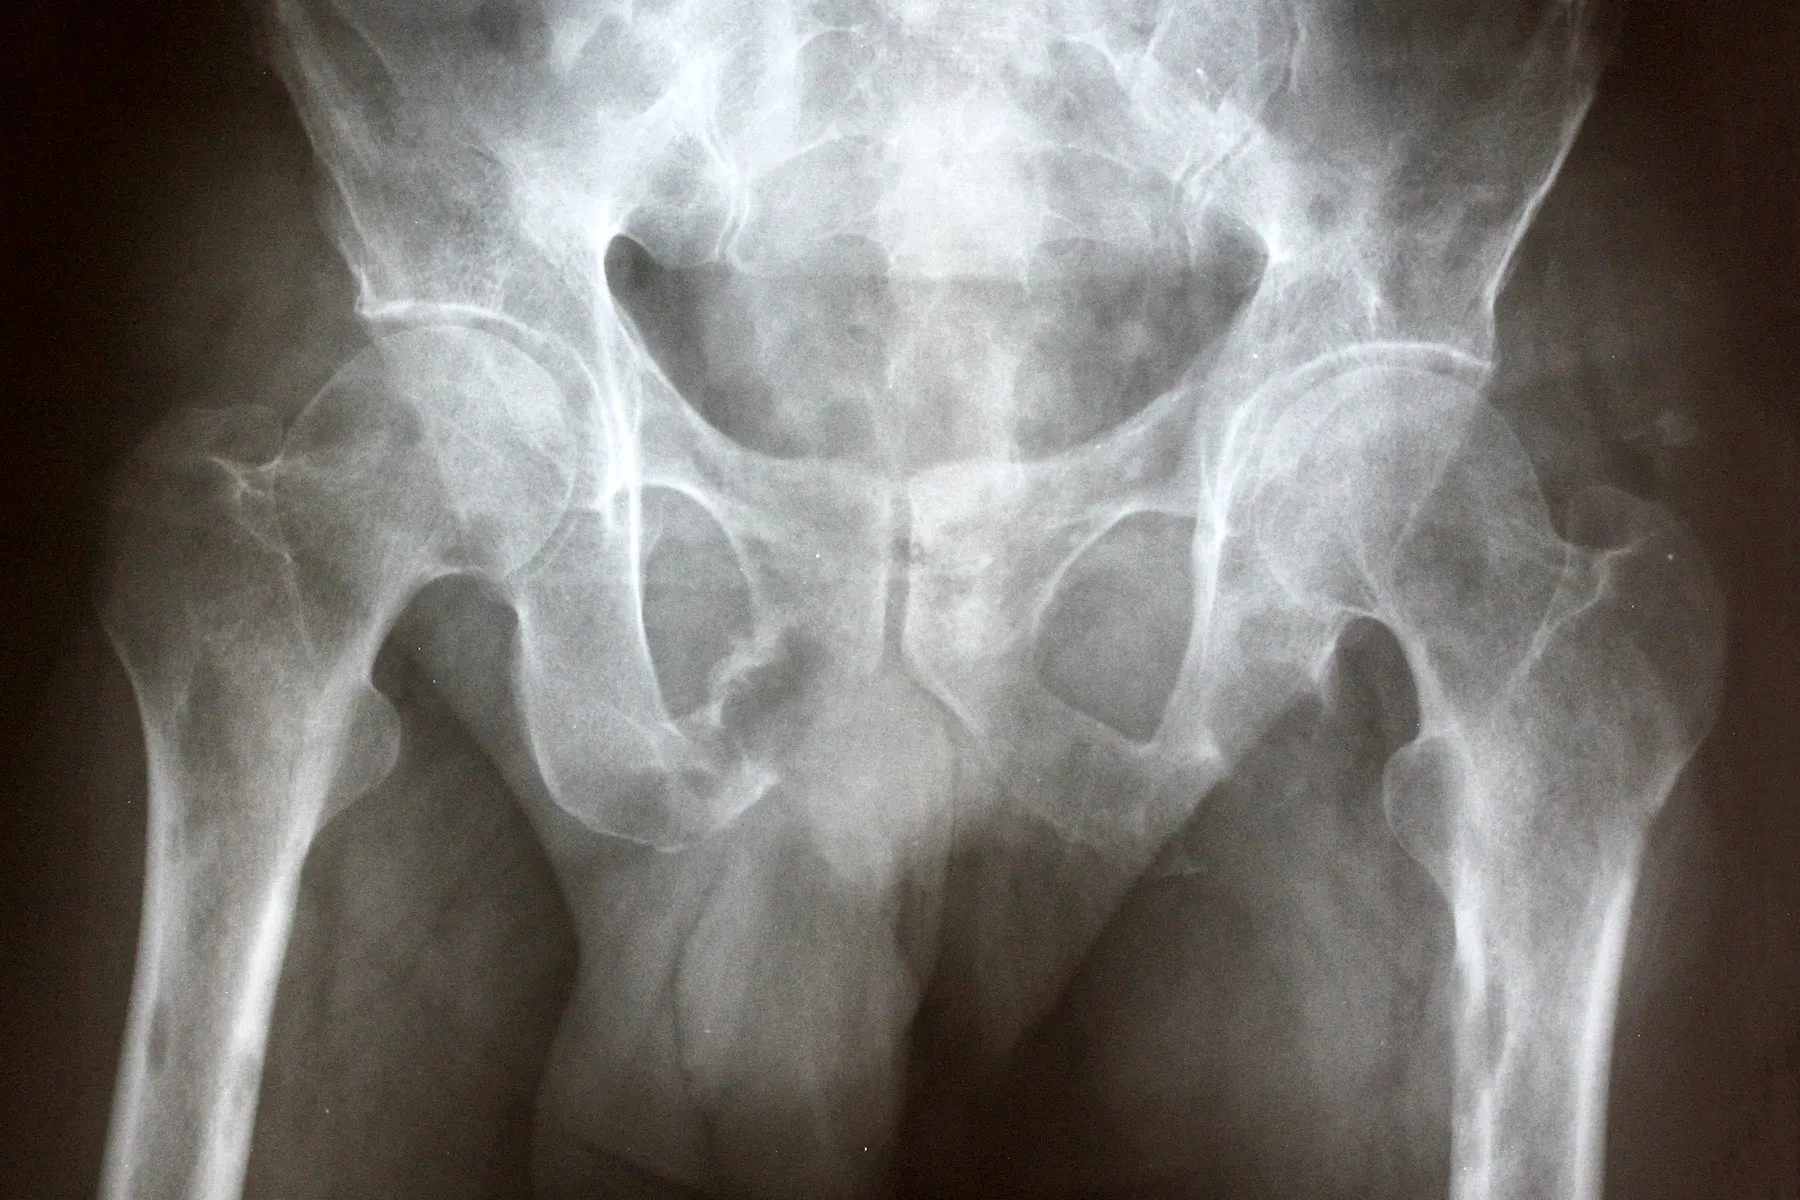 metastatic cancer hip